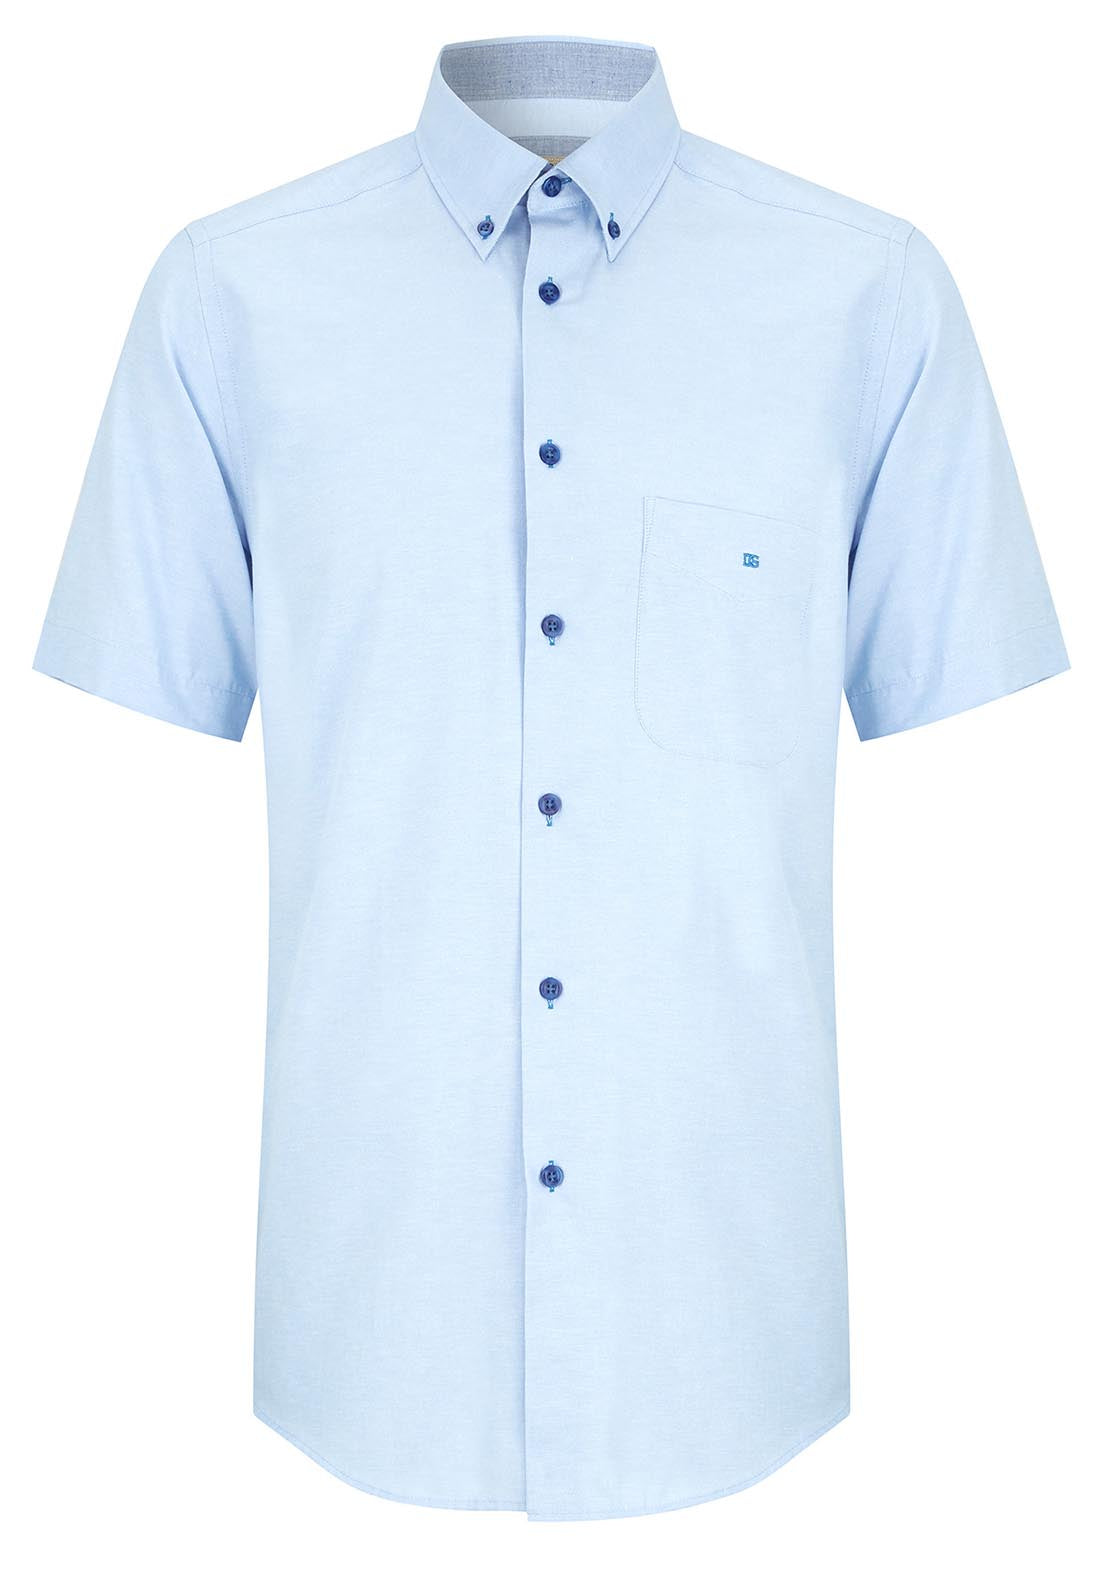 Drifter Short Sleeve Plain Shirt - Blue 1 Shaws Department Stores